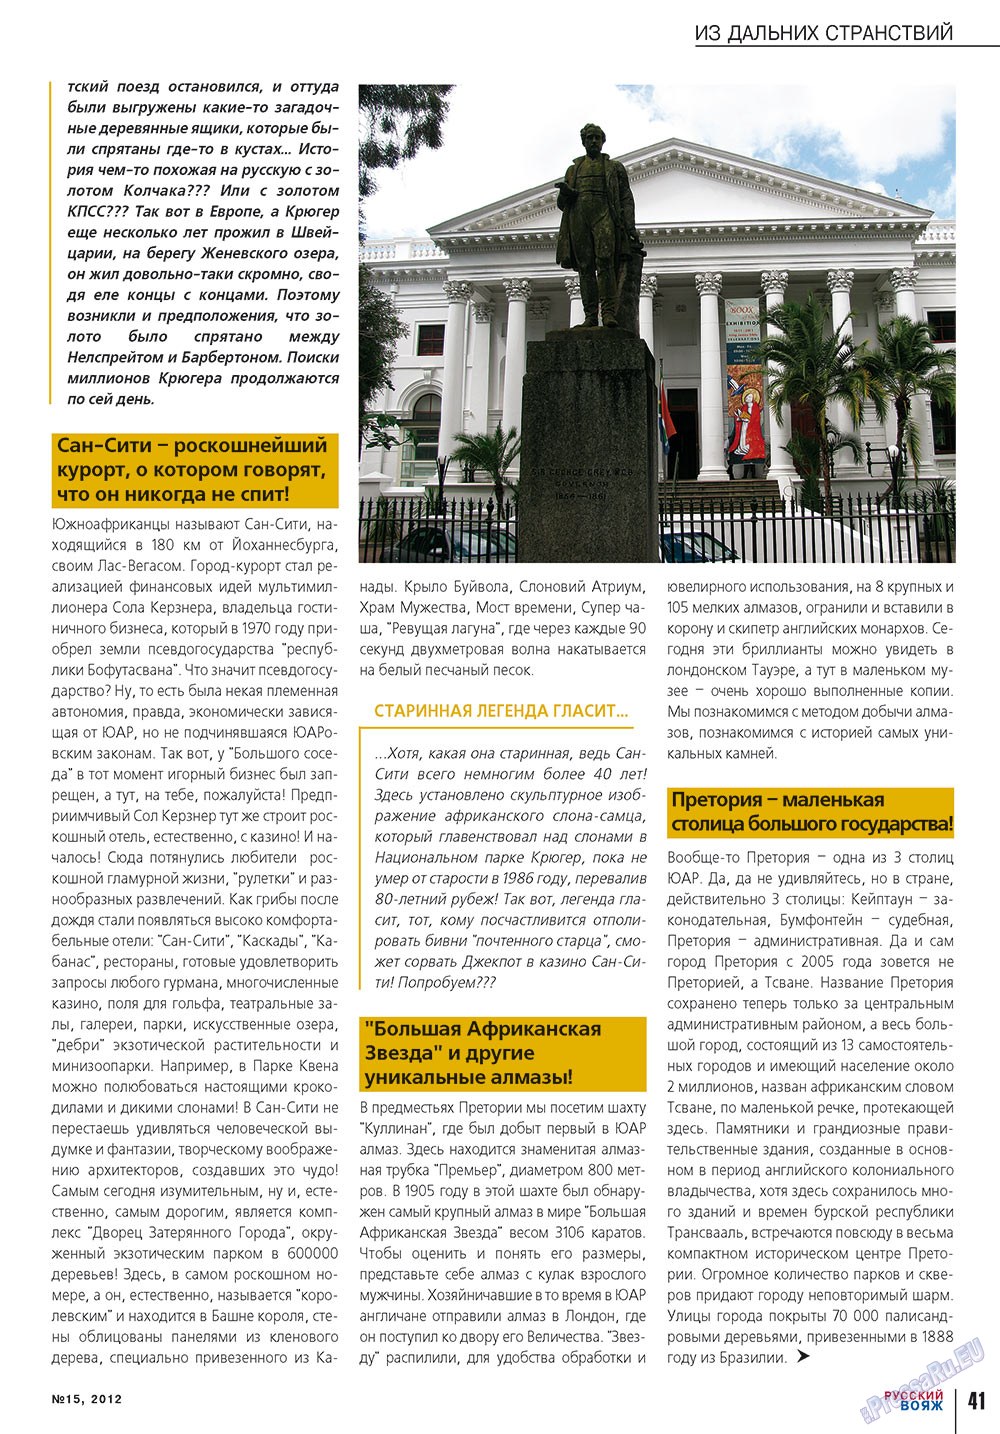 Русский вояж (журнал). 2012 год, номер 15, стр. 41